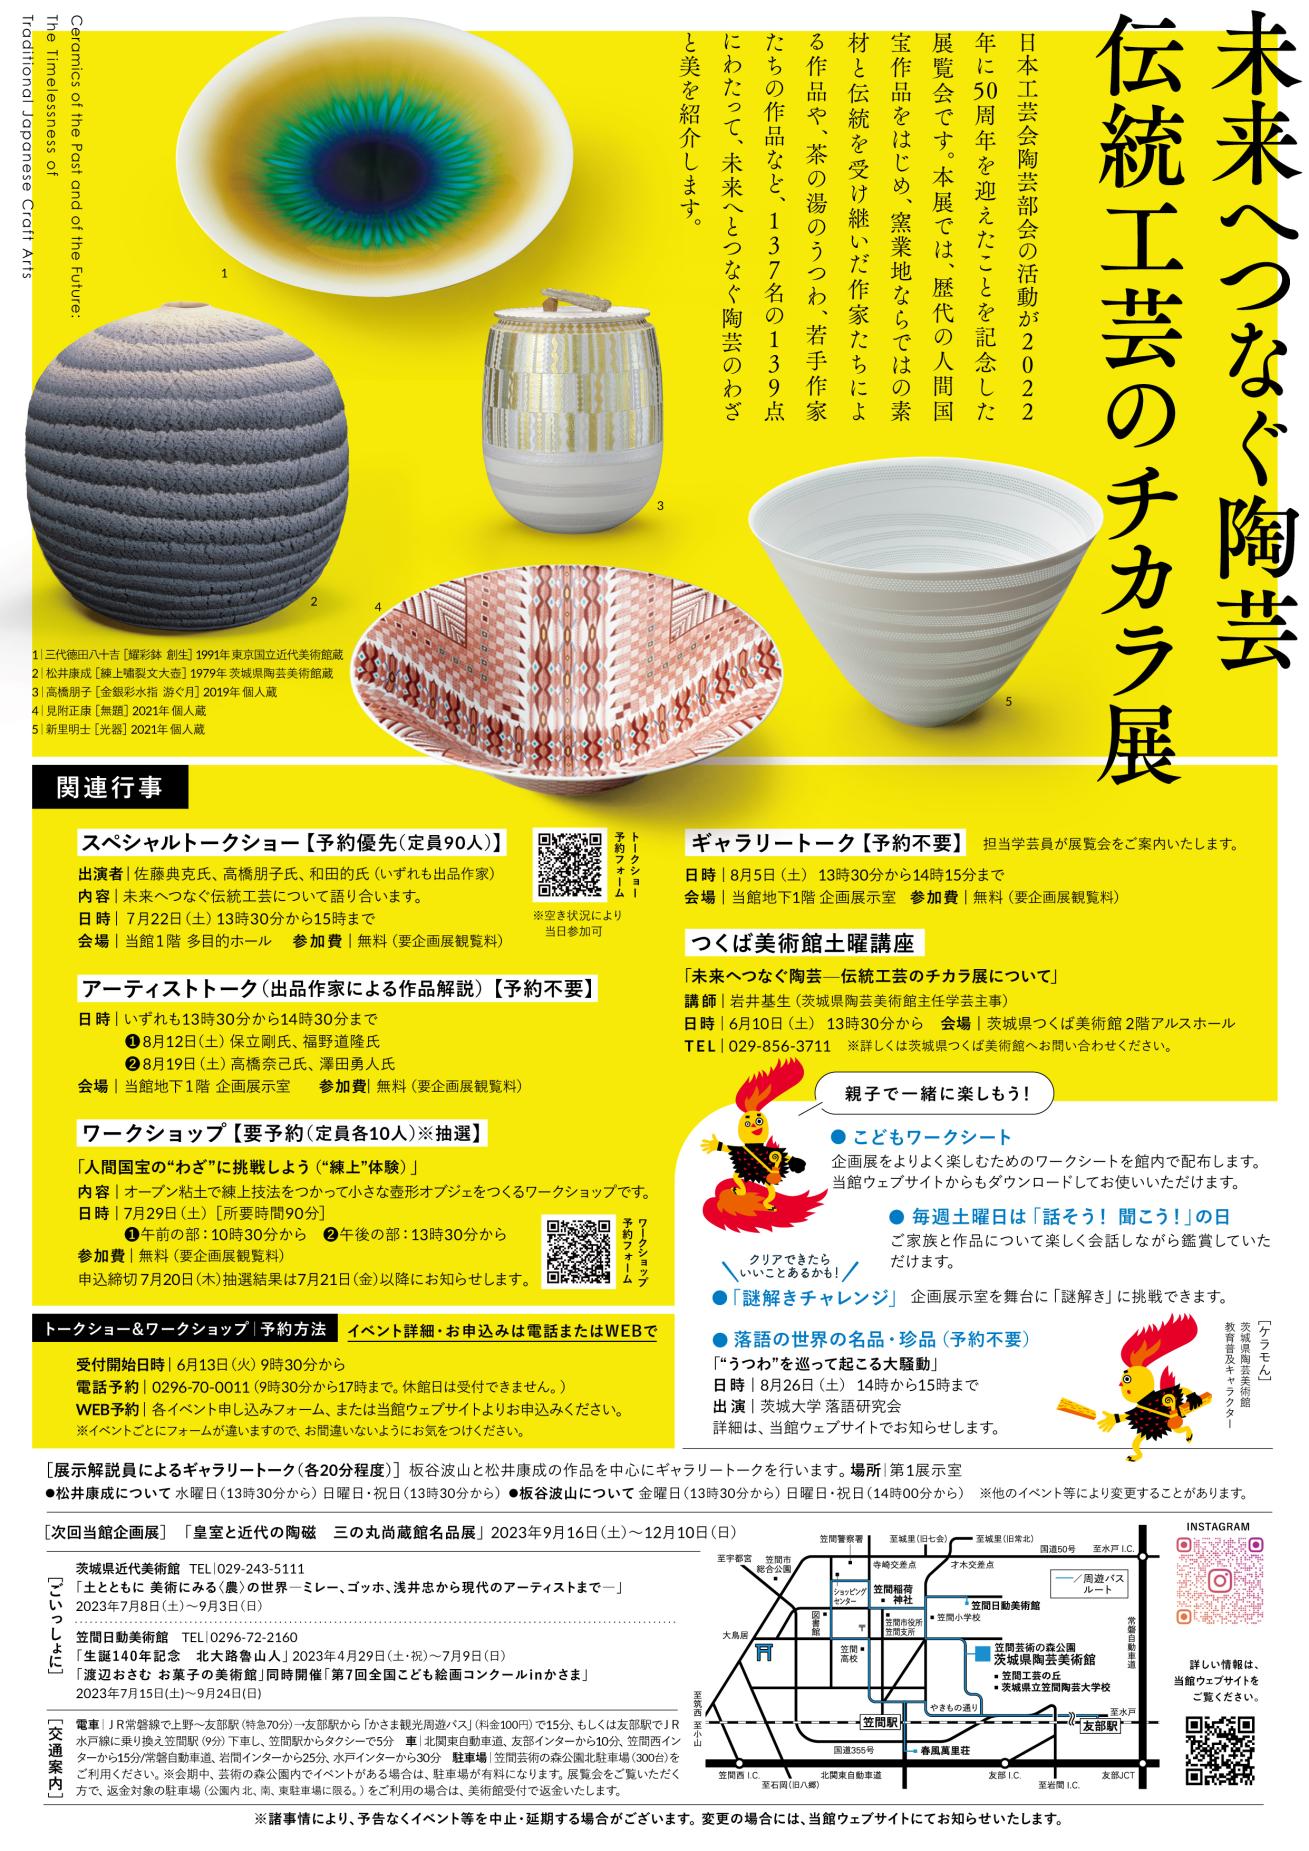 企画展「未来へつなぐ陶芸　伝統工芸のチカラ展」関連イベント